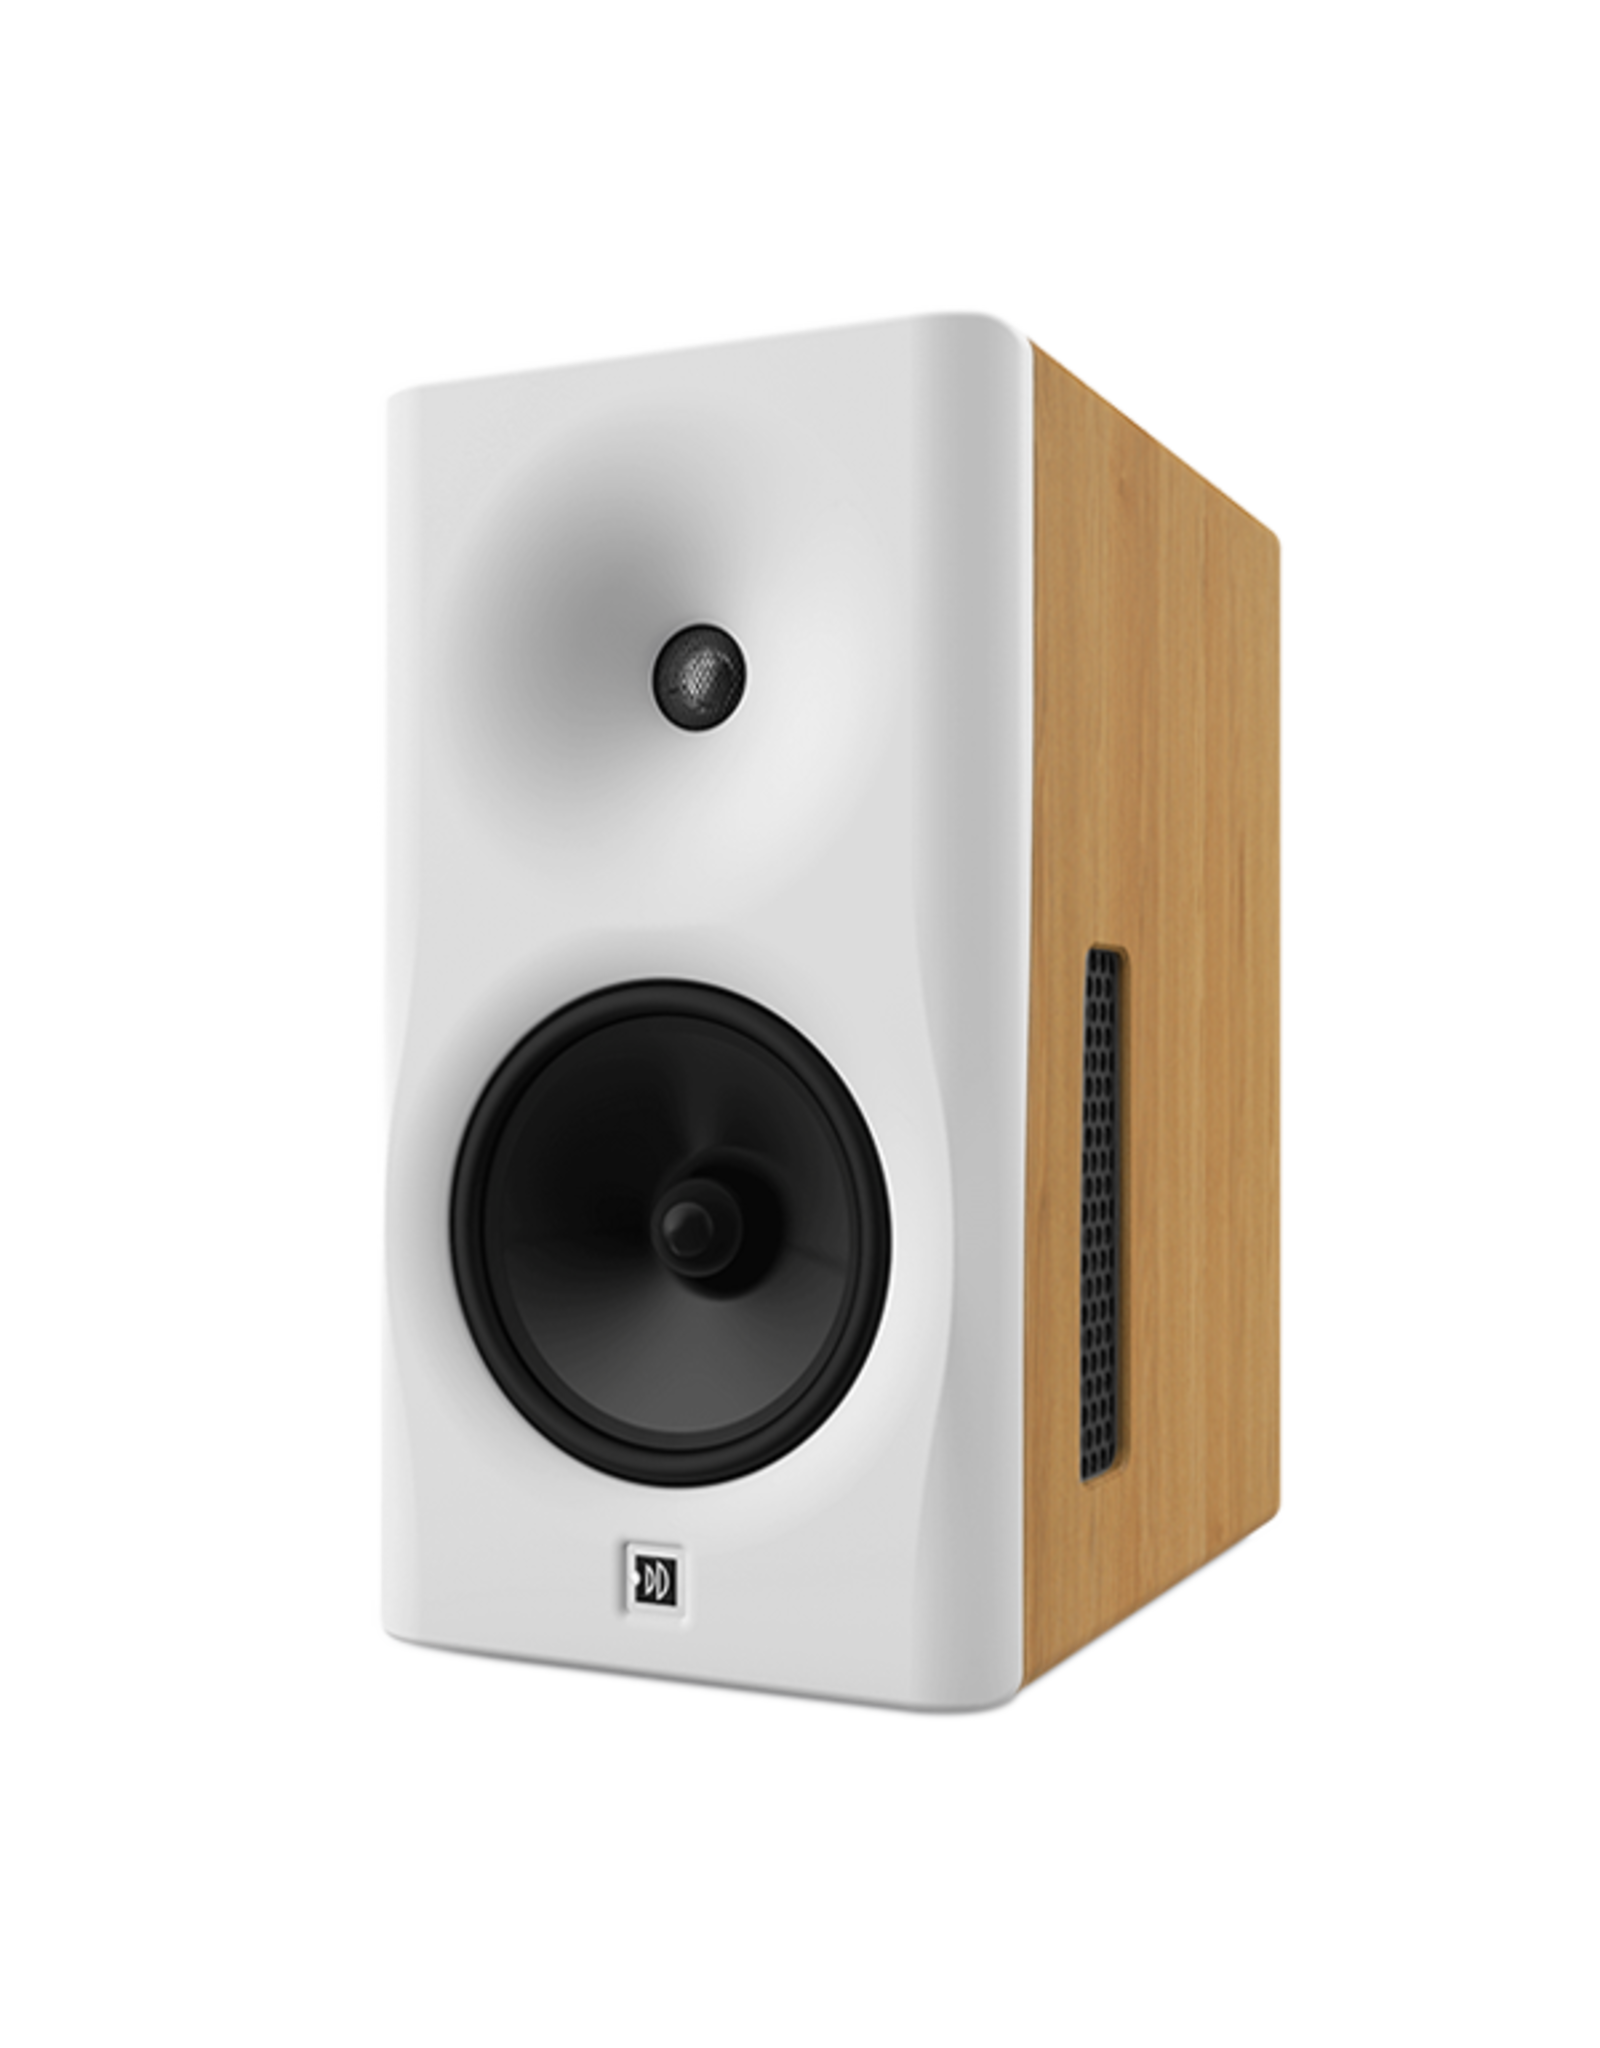 dutch-dutch-8c-speaker-white-baffle-natural-cabine.png